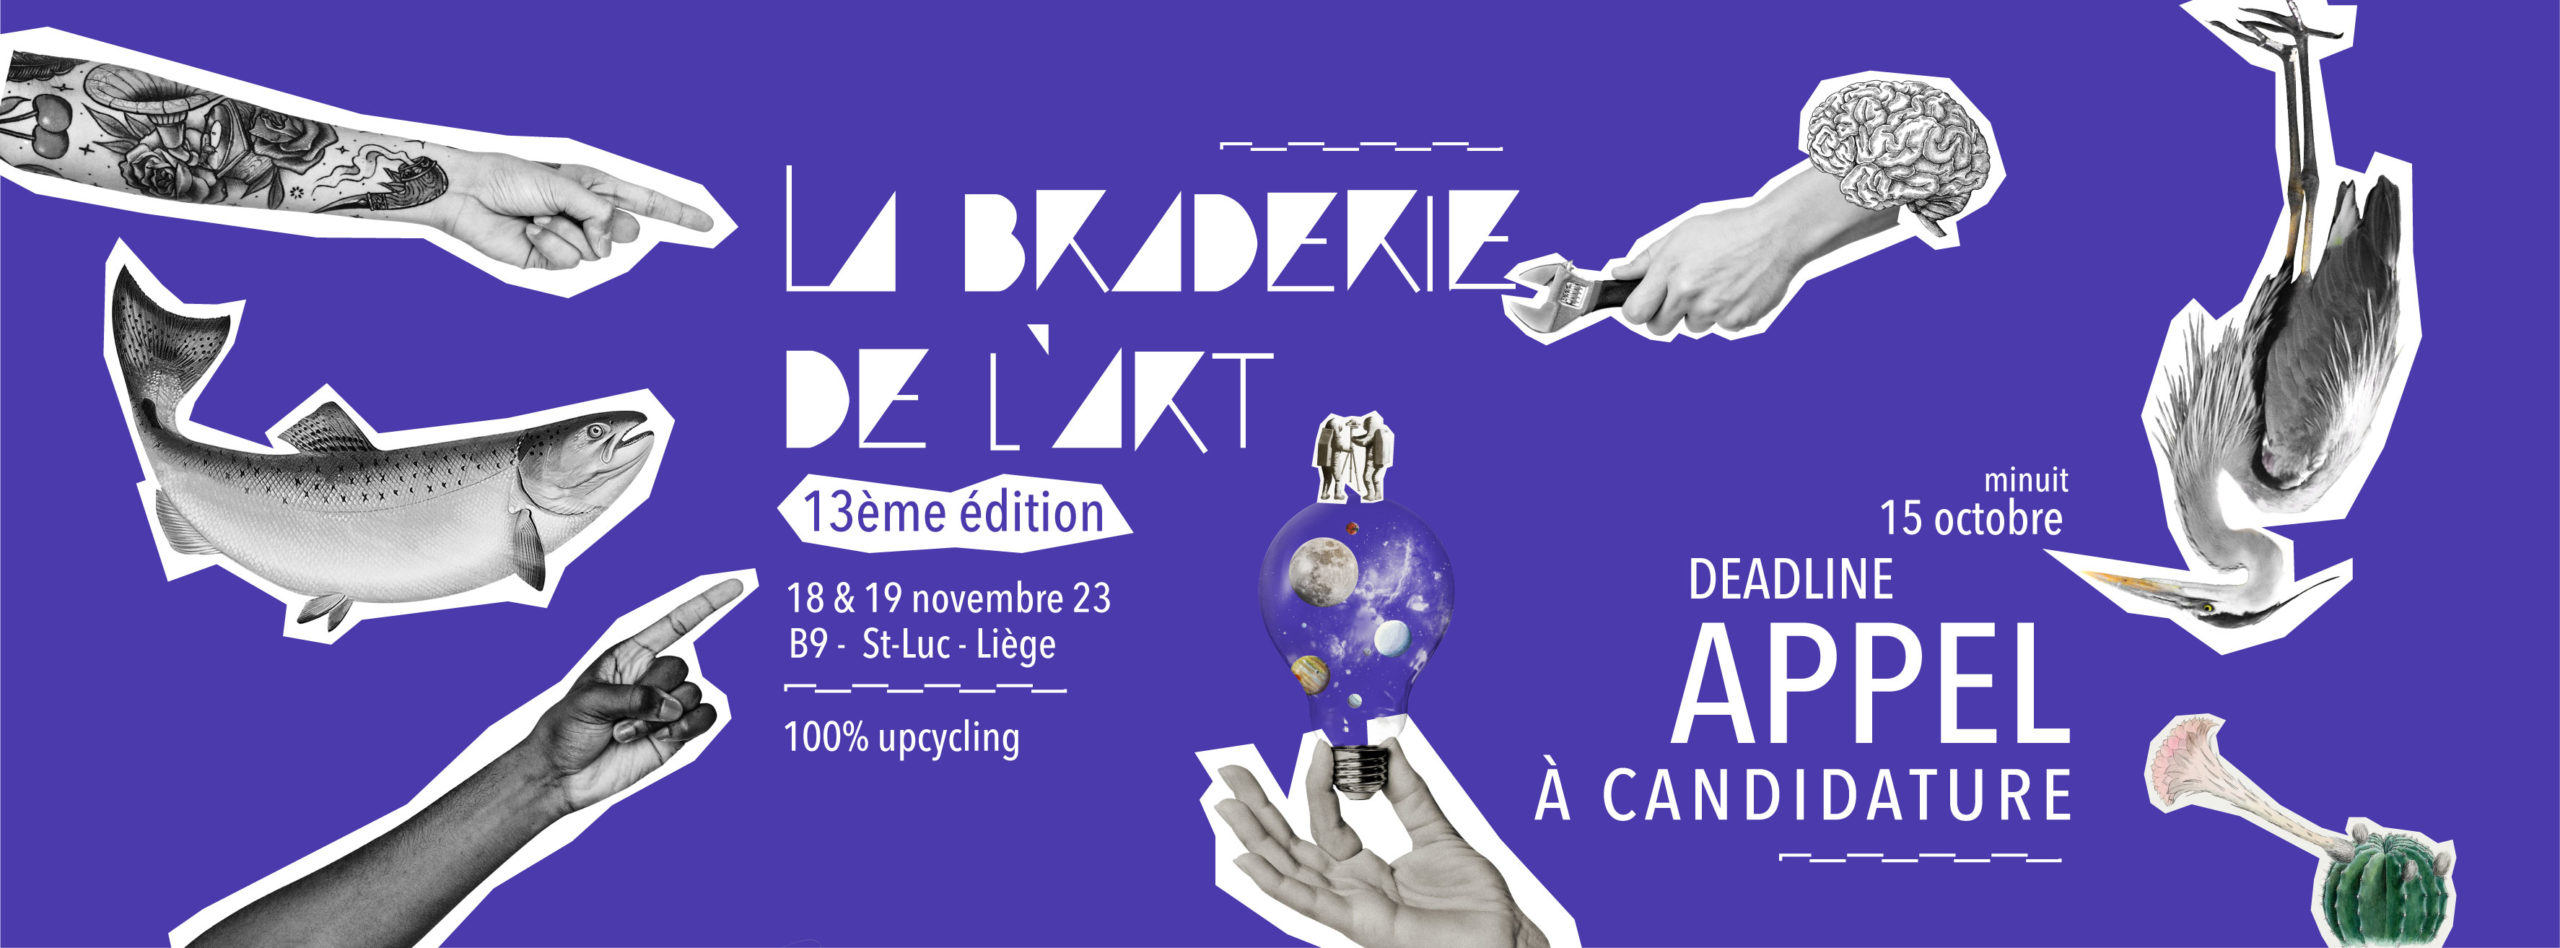 Braderie de l'Art de Liège - 24H Upcycling 13th Edition